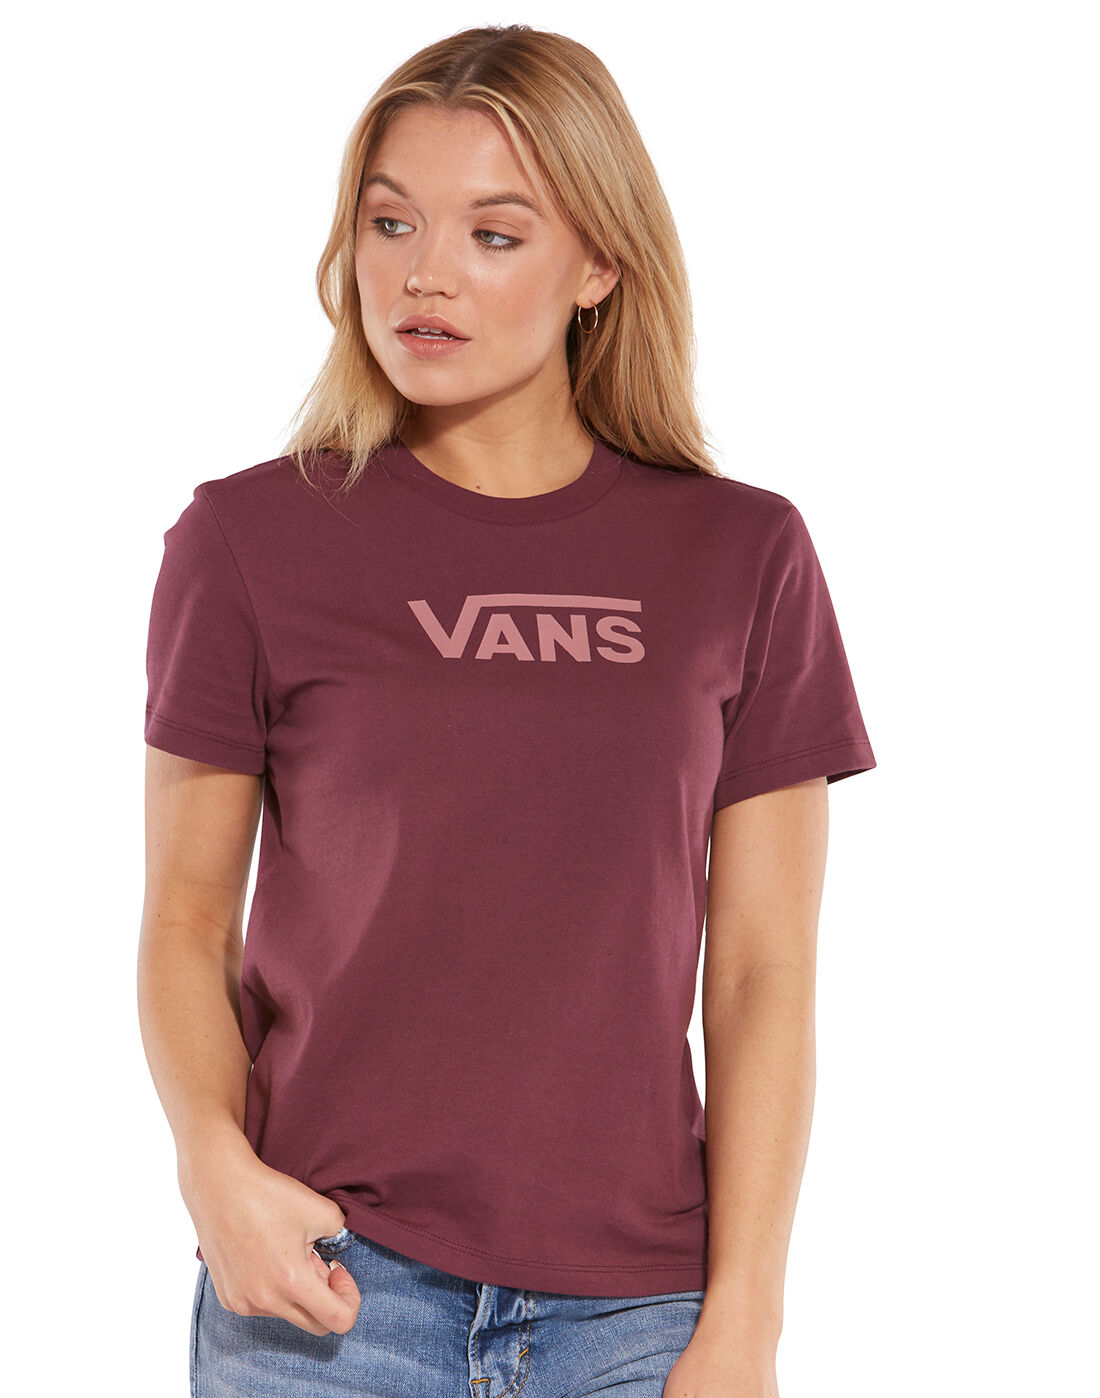 vans t shirt womens